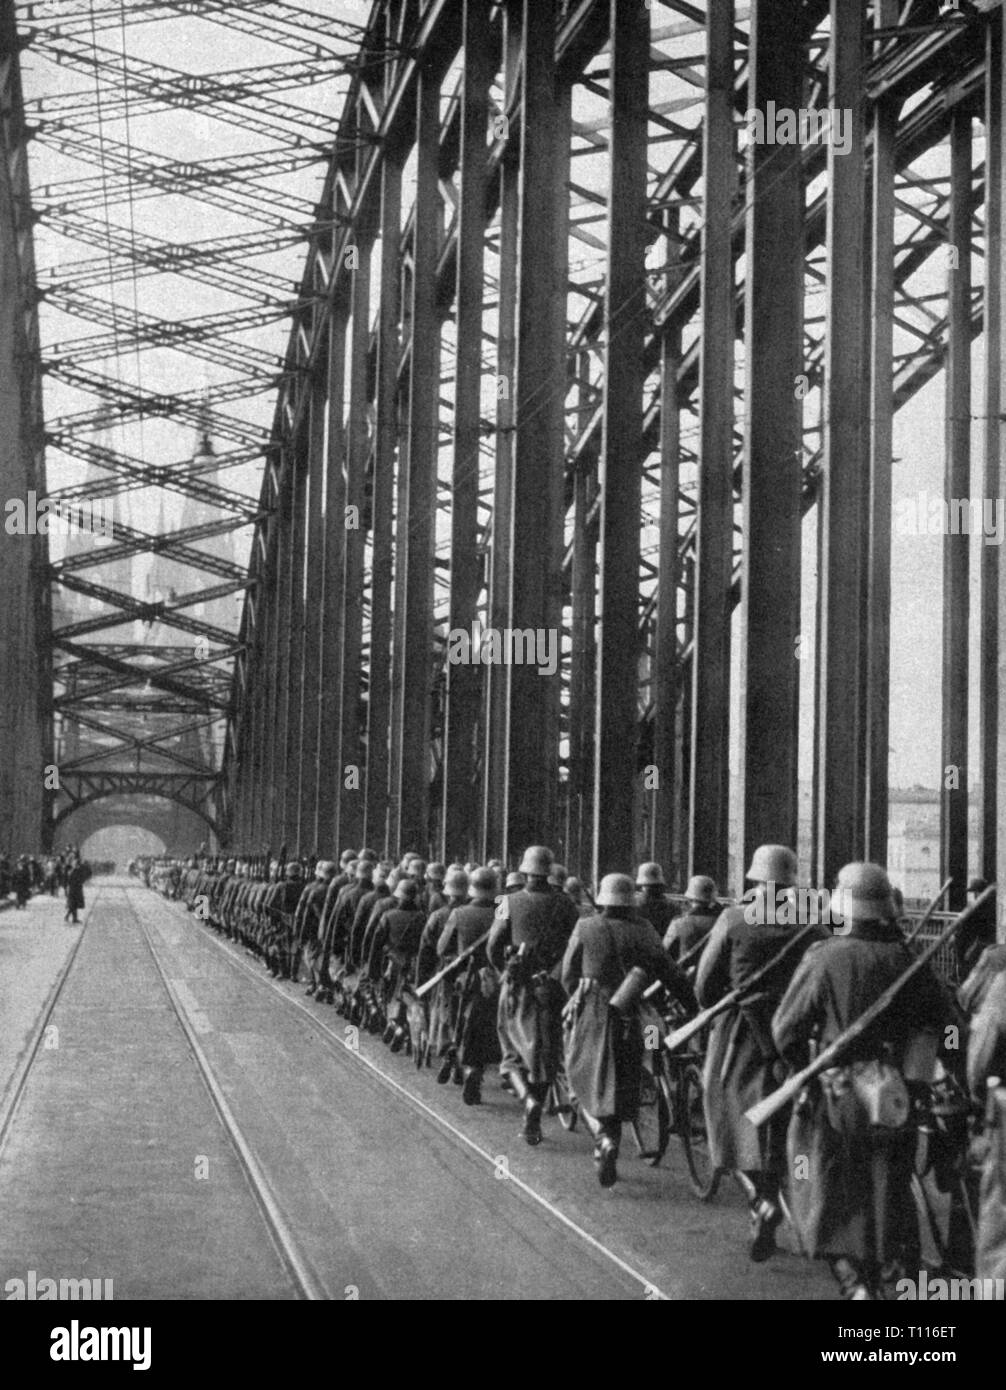 Il nazismo / socialismo nazionale, politica, entrata in demilitarized Renania, fanti che stanno marciando attraverso il ponte Deutzer, Colonia, 7.3.1936, Additional-Rights-Clearance-Info-Not-Available Foto Stock